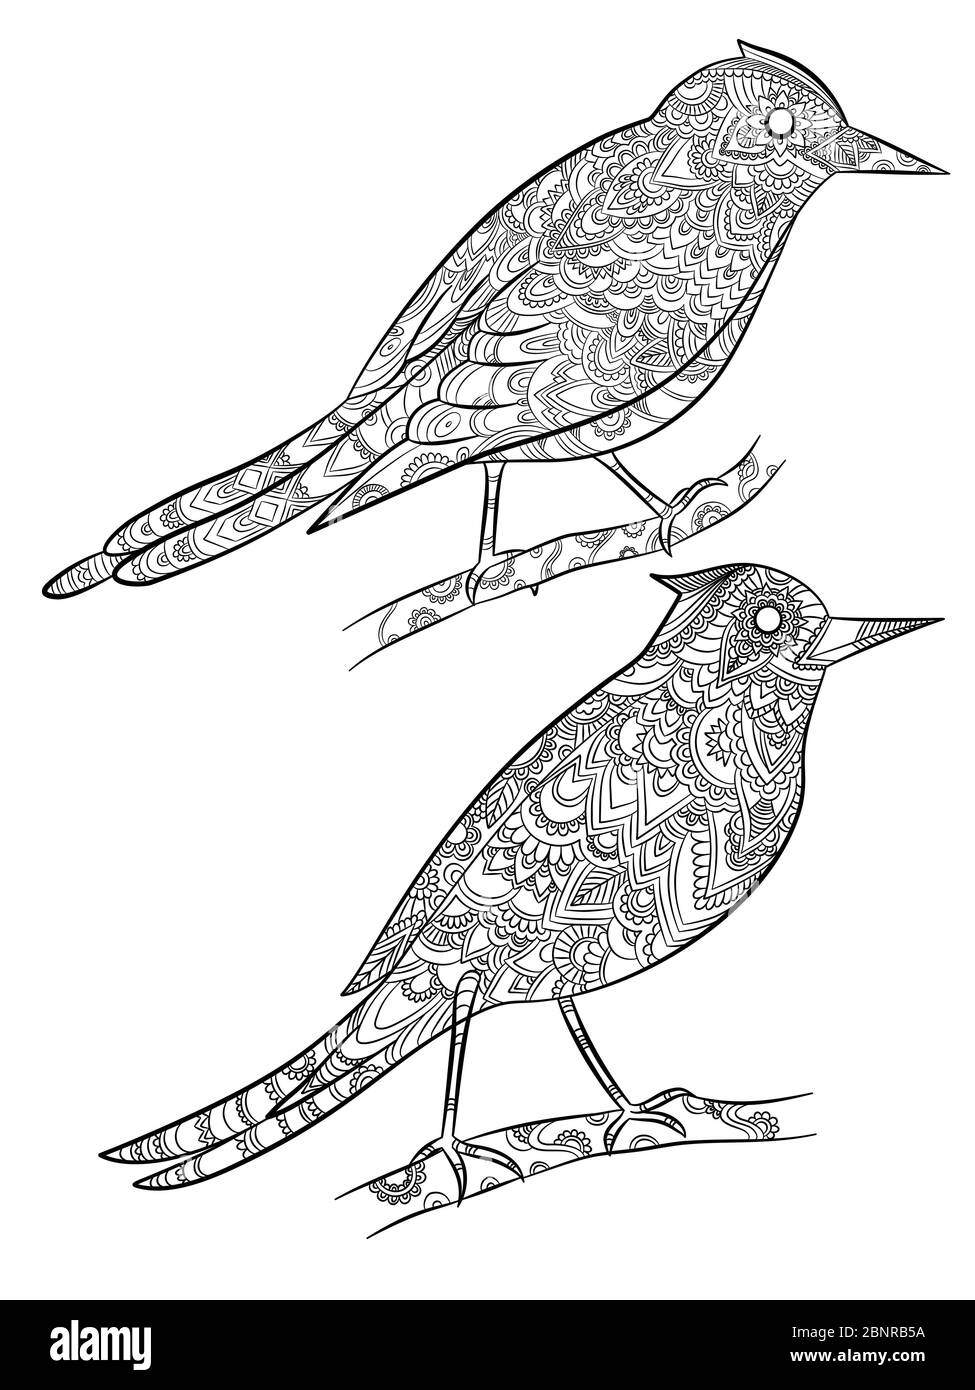 Pagine di colorazione uccelli. Volare canarino selvaggio con disegno floreale lineare sulle loro illustrazioni vettoriali del corpo cartone animato Illustrazione Vettoriale